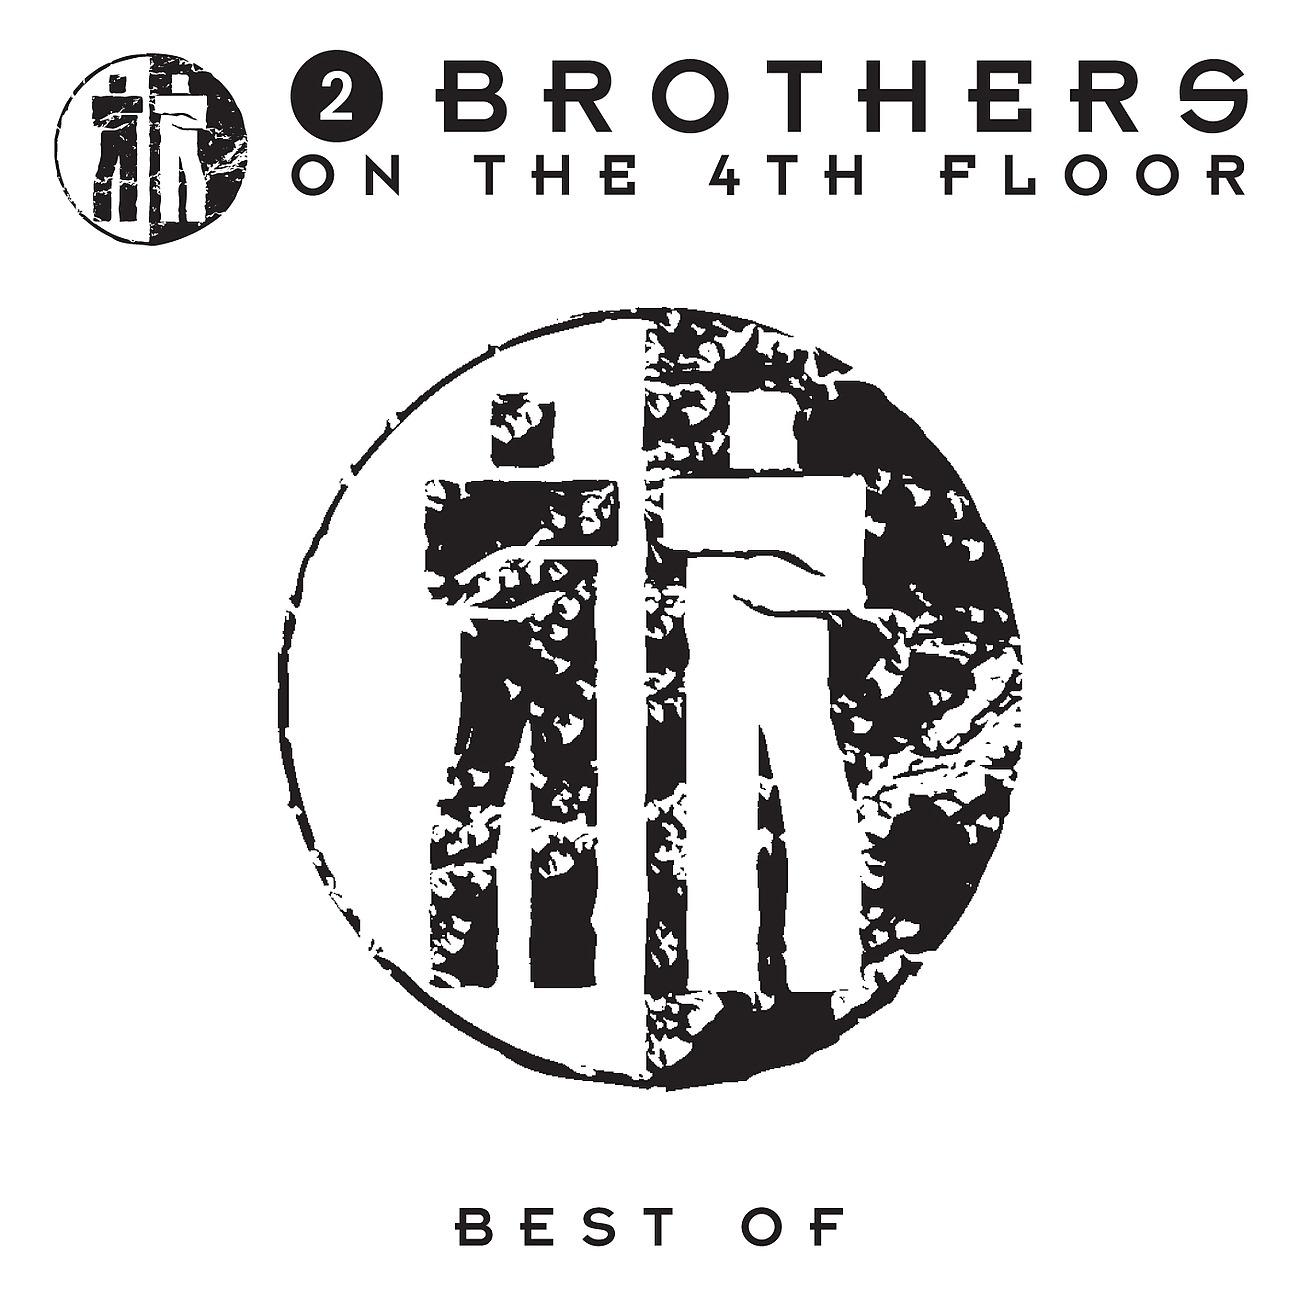 Песни brothers on the 4th floor. Группа 2 brothers on the 4th Floor. 2 Brothers on the 4th Floor солистка. 2 Brothers on the 4th Floor - 2 (1996). 2 Brothers on the 4th Floor - never Alone.